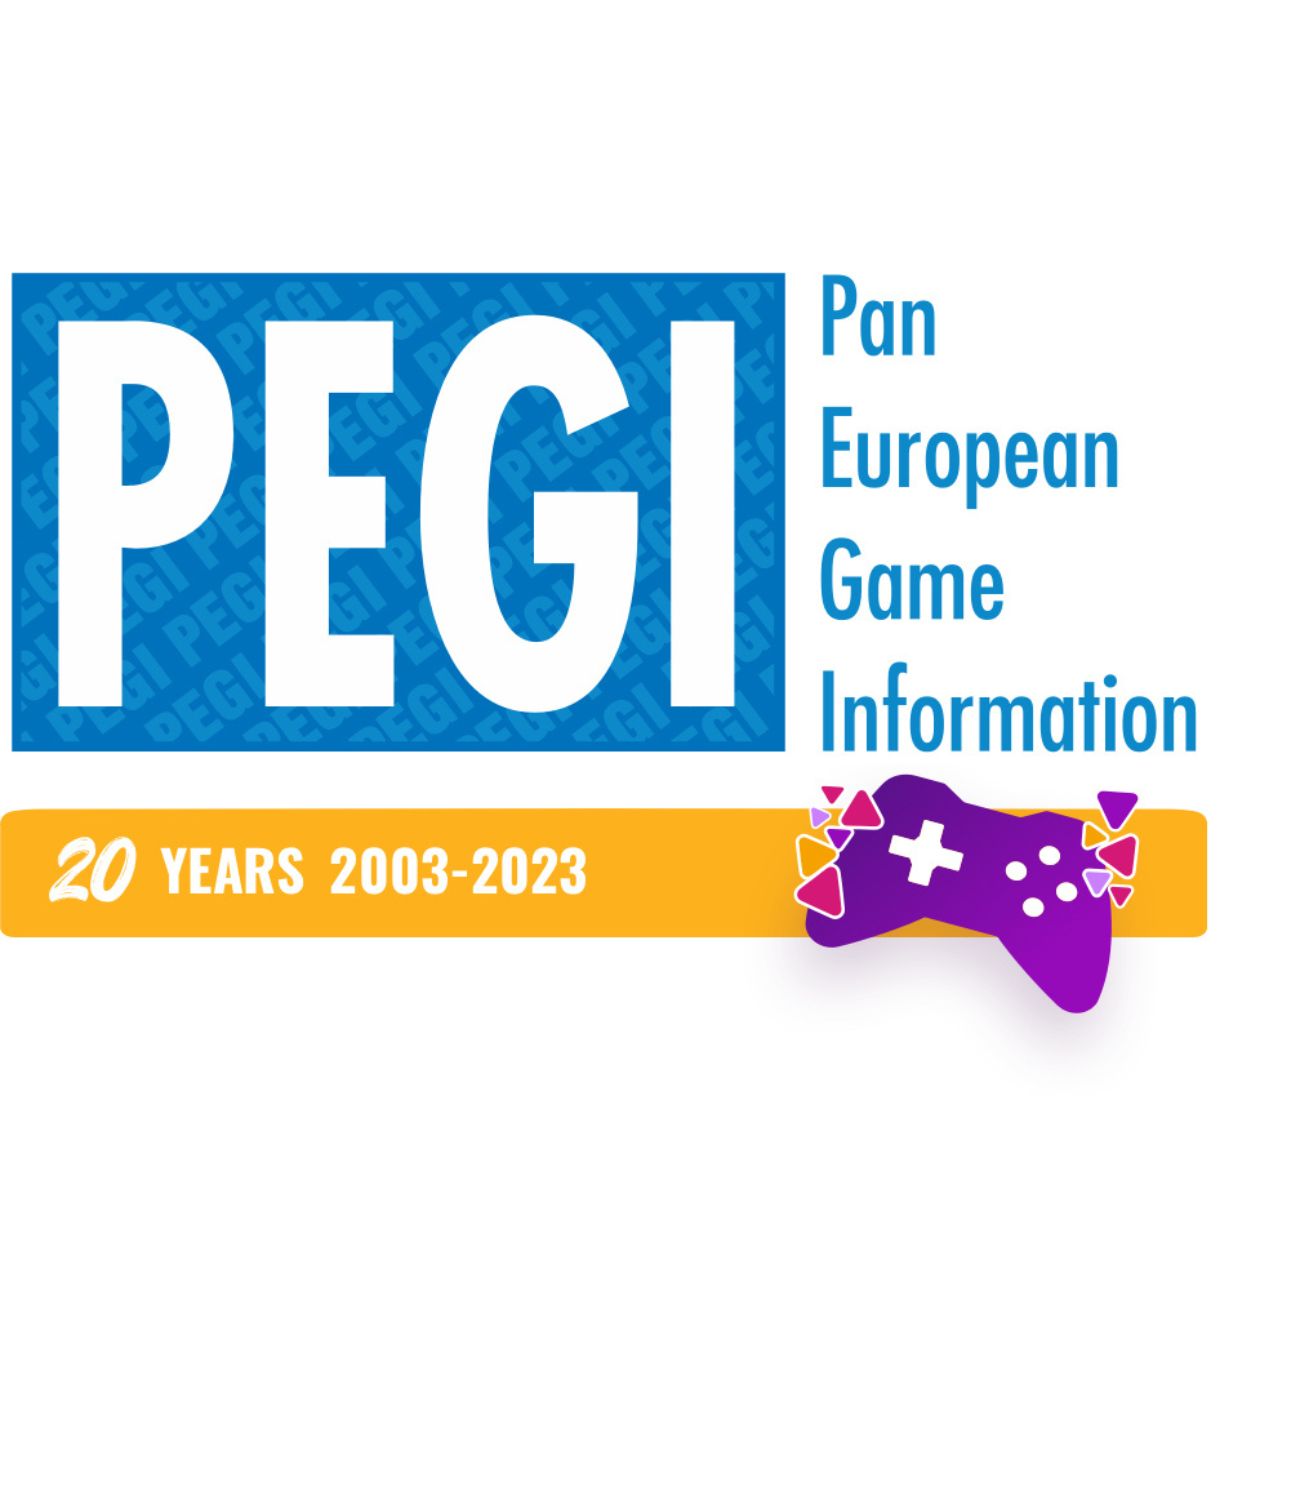 PEGI 20 years 2003-2023